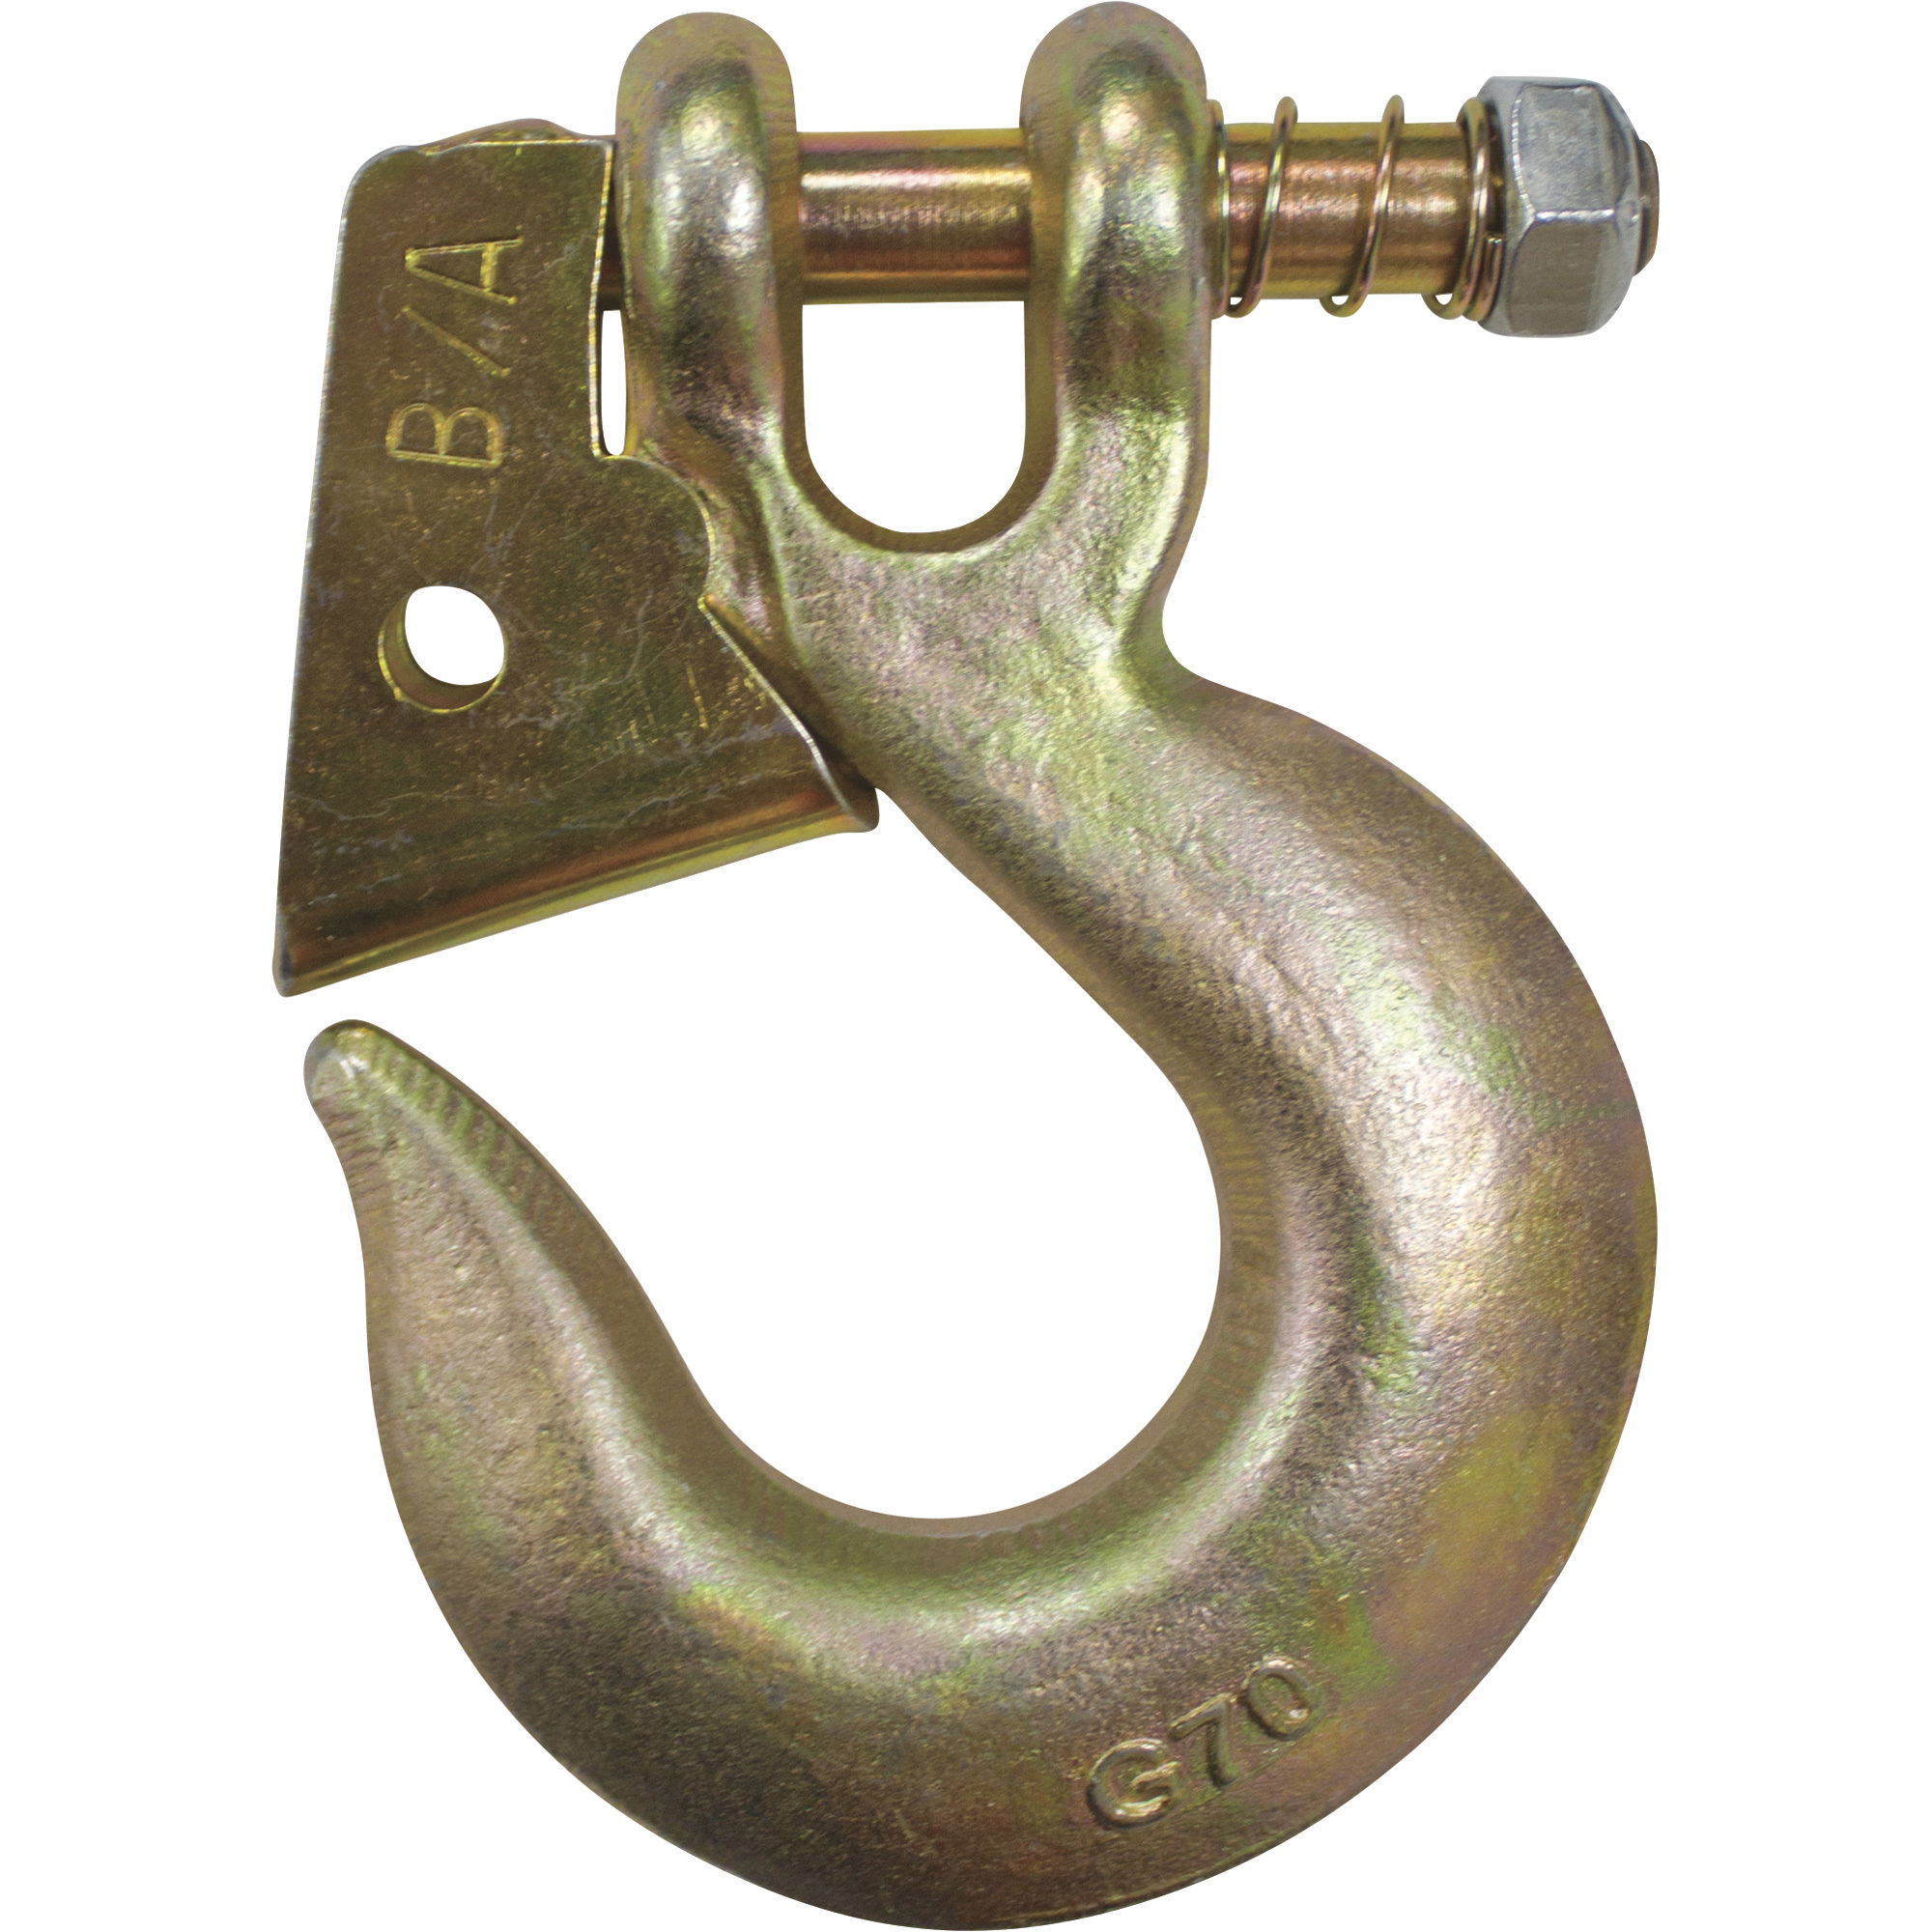 B/A Products Twist Lock Clevis Slip Hook â 1/2Inch, 6.5Inch L, 11,300-Lb. Capacity, Model G7-205-12